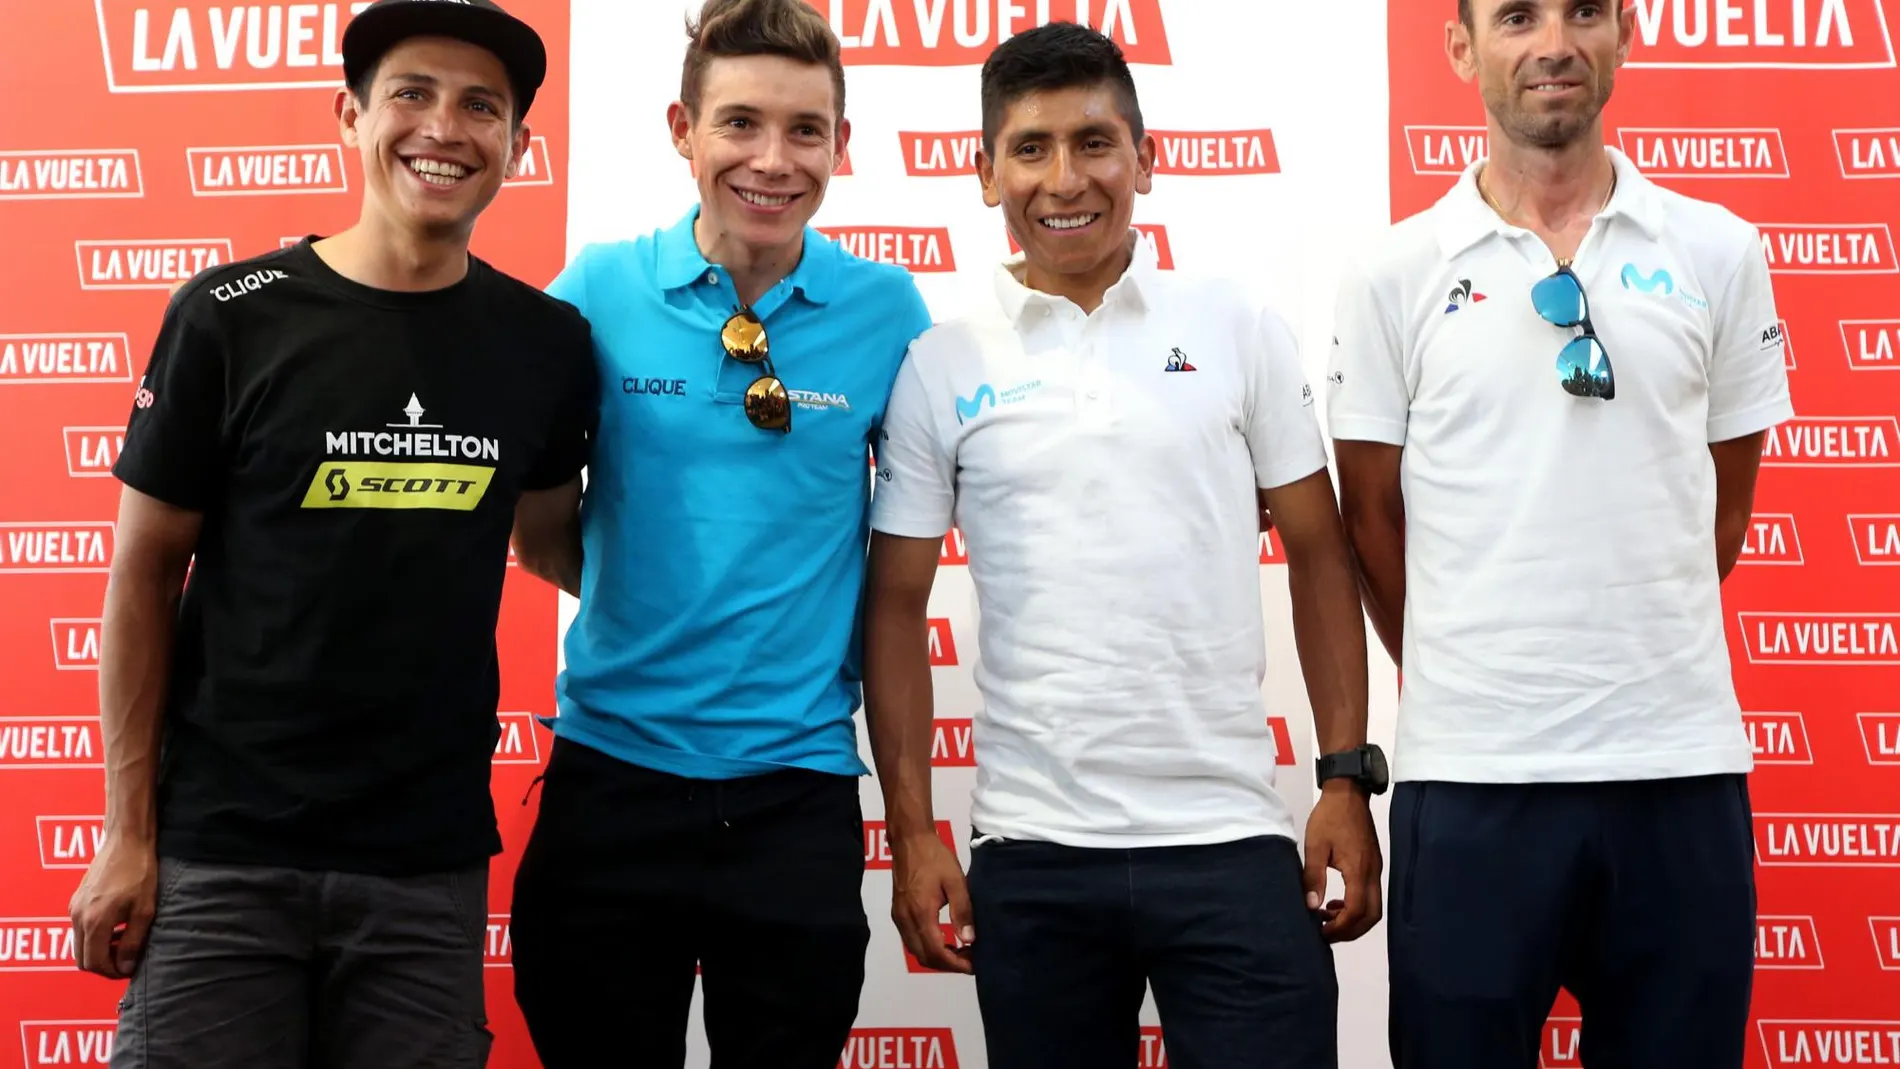 Esteban Chaves, Miguel Ángel López, Nairo Quintana y Alejandro Valverde